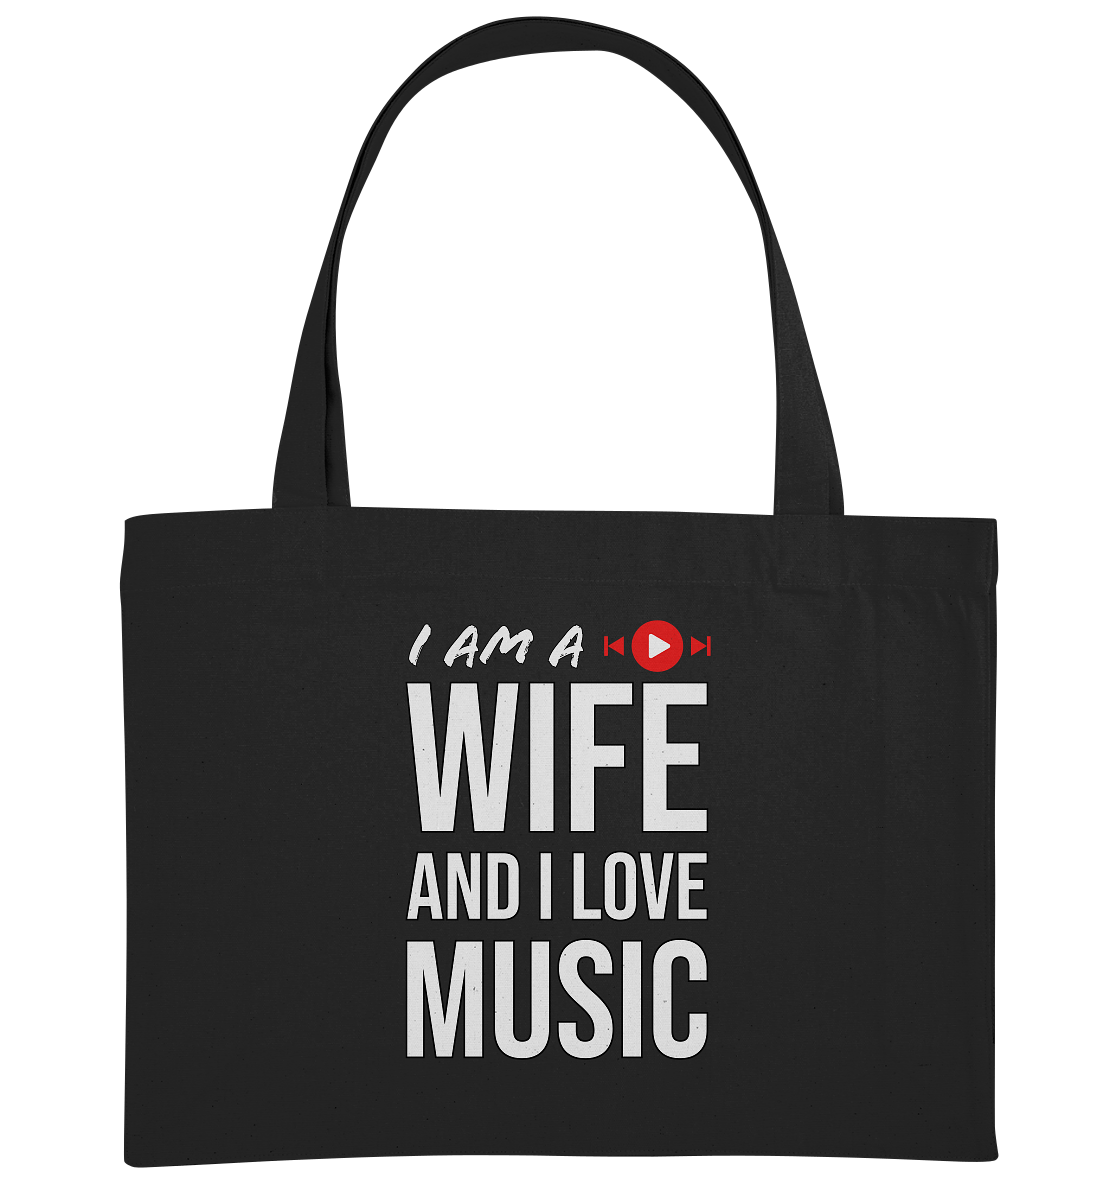 I AM A WIFE AND I LOVE MUSIC - Organic Shopping - Bag - HalloGeschenk.de #geschenkideen# #personalisiert# #geschenk#